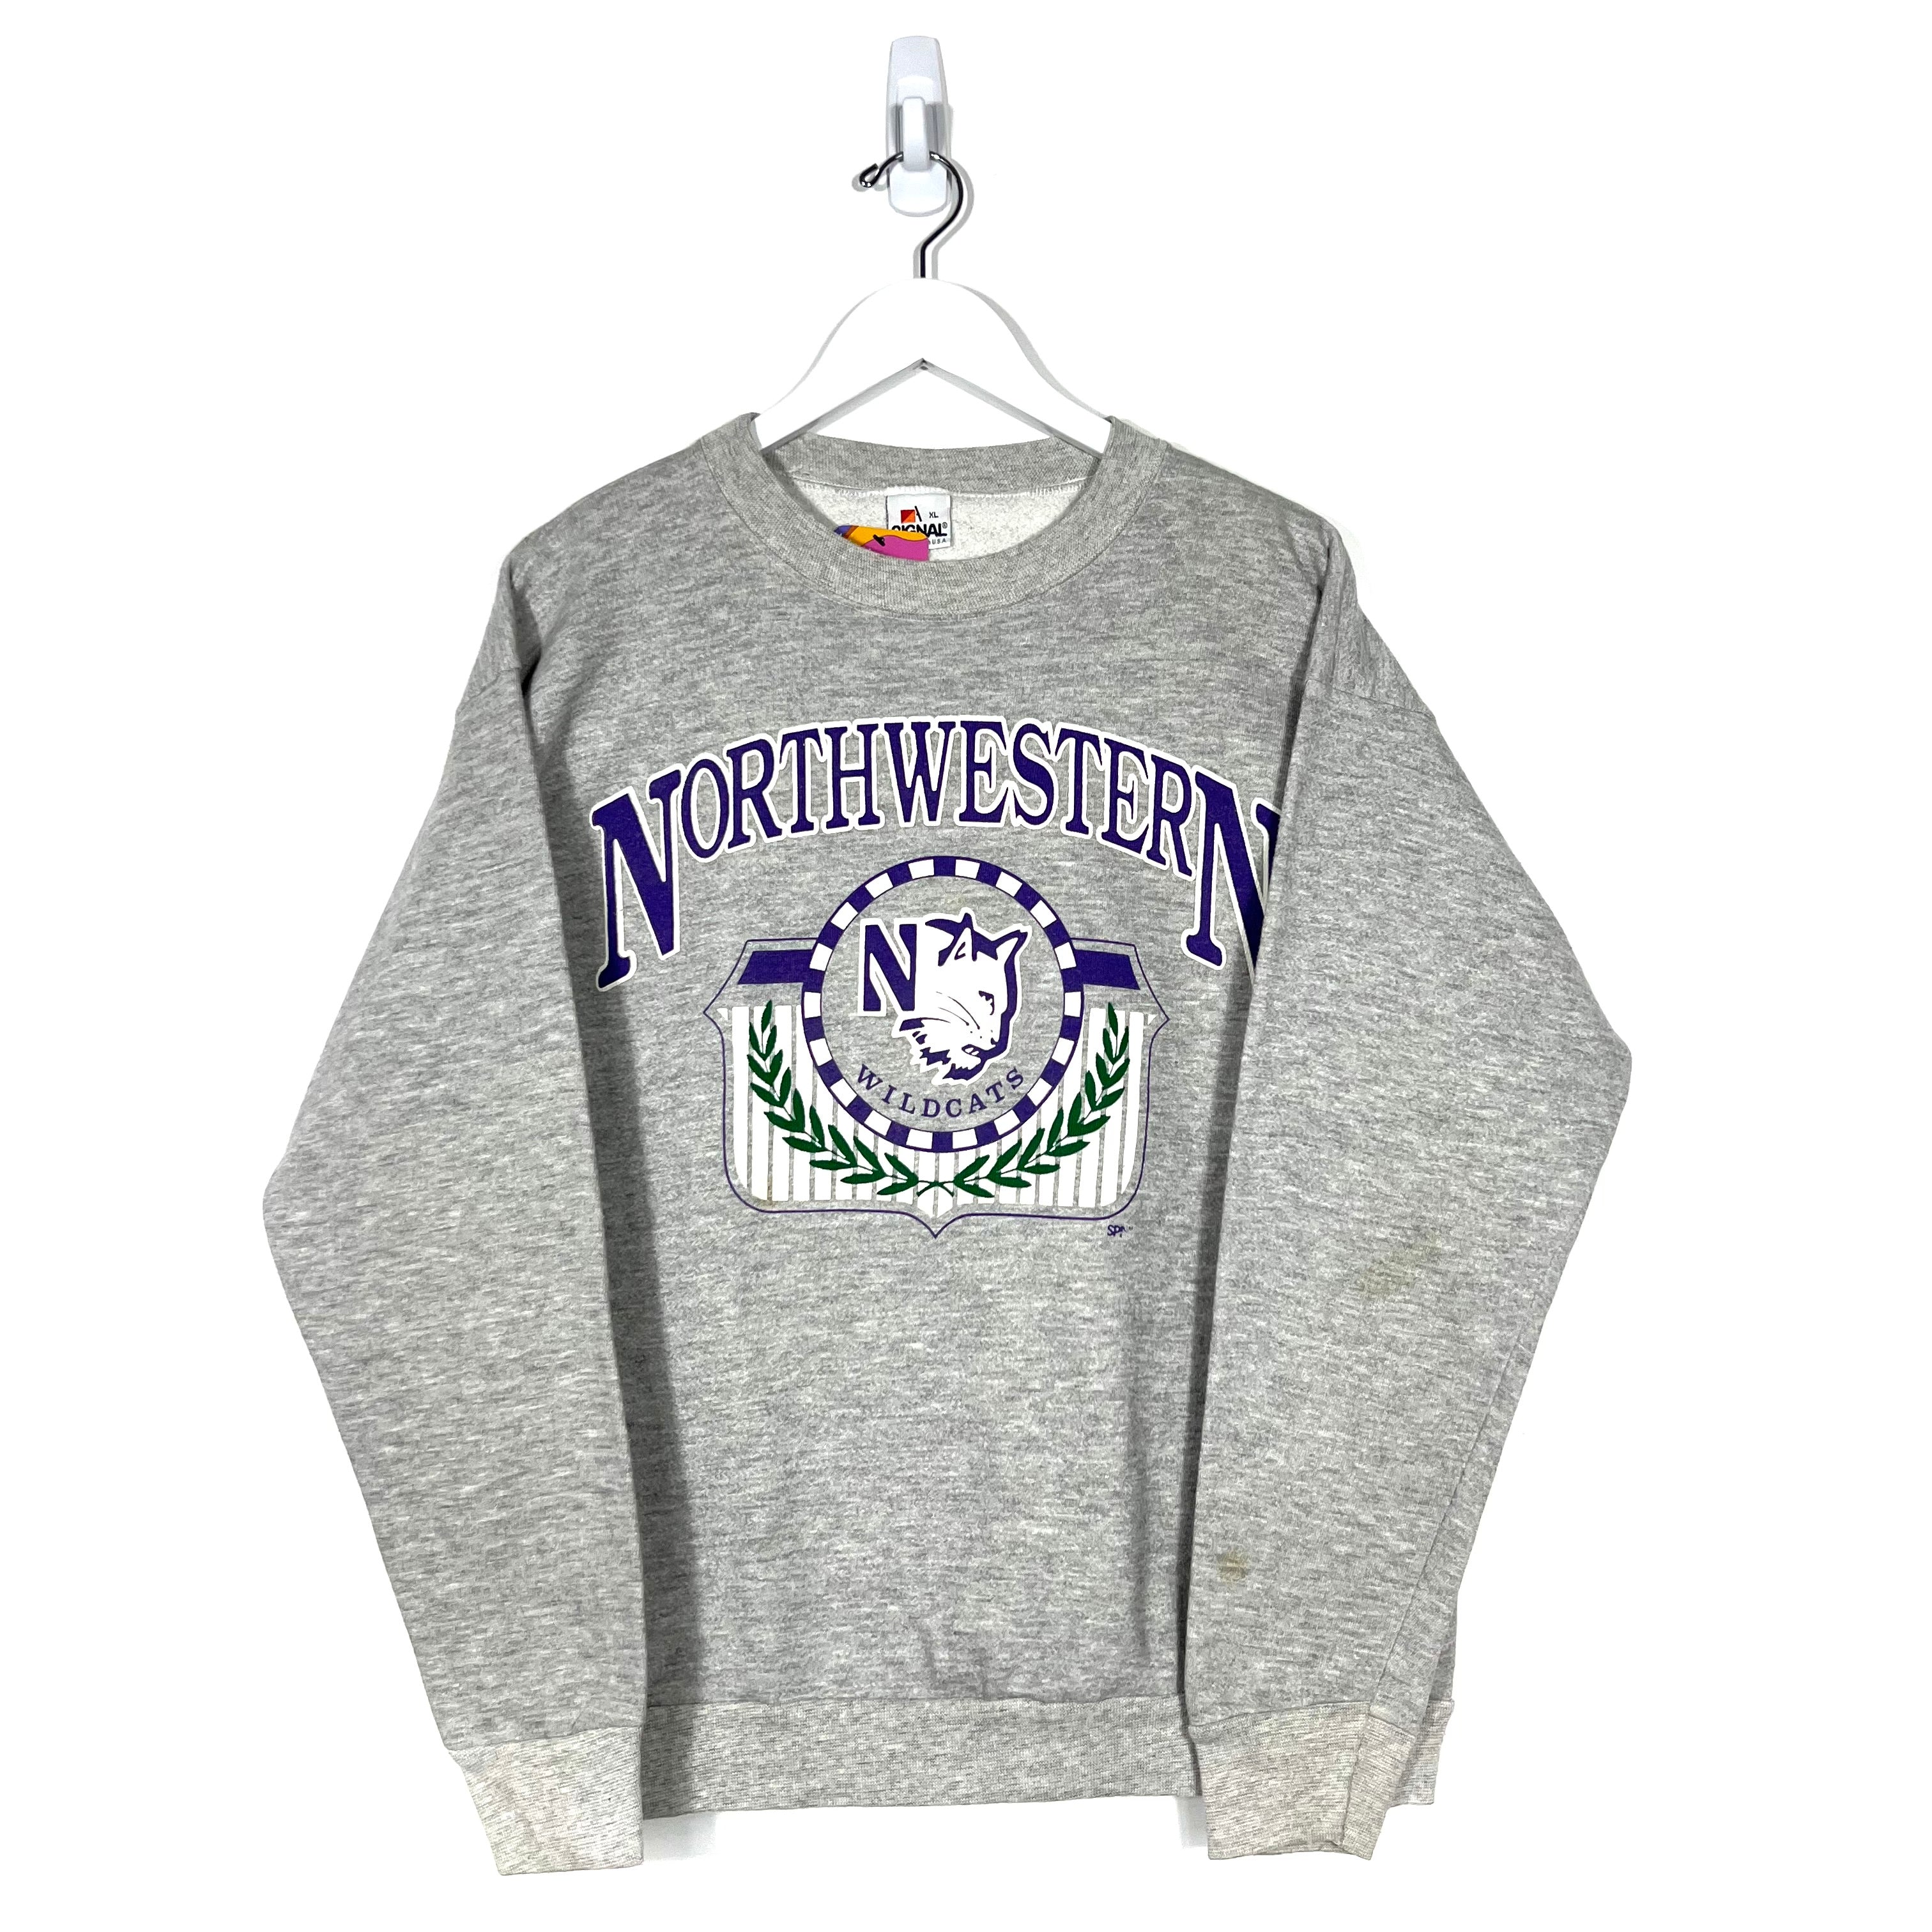 Vintage Northwestern Wildcats Crewneck Sweatshirt - Men's Medium